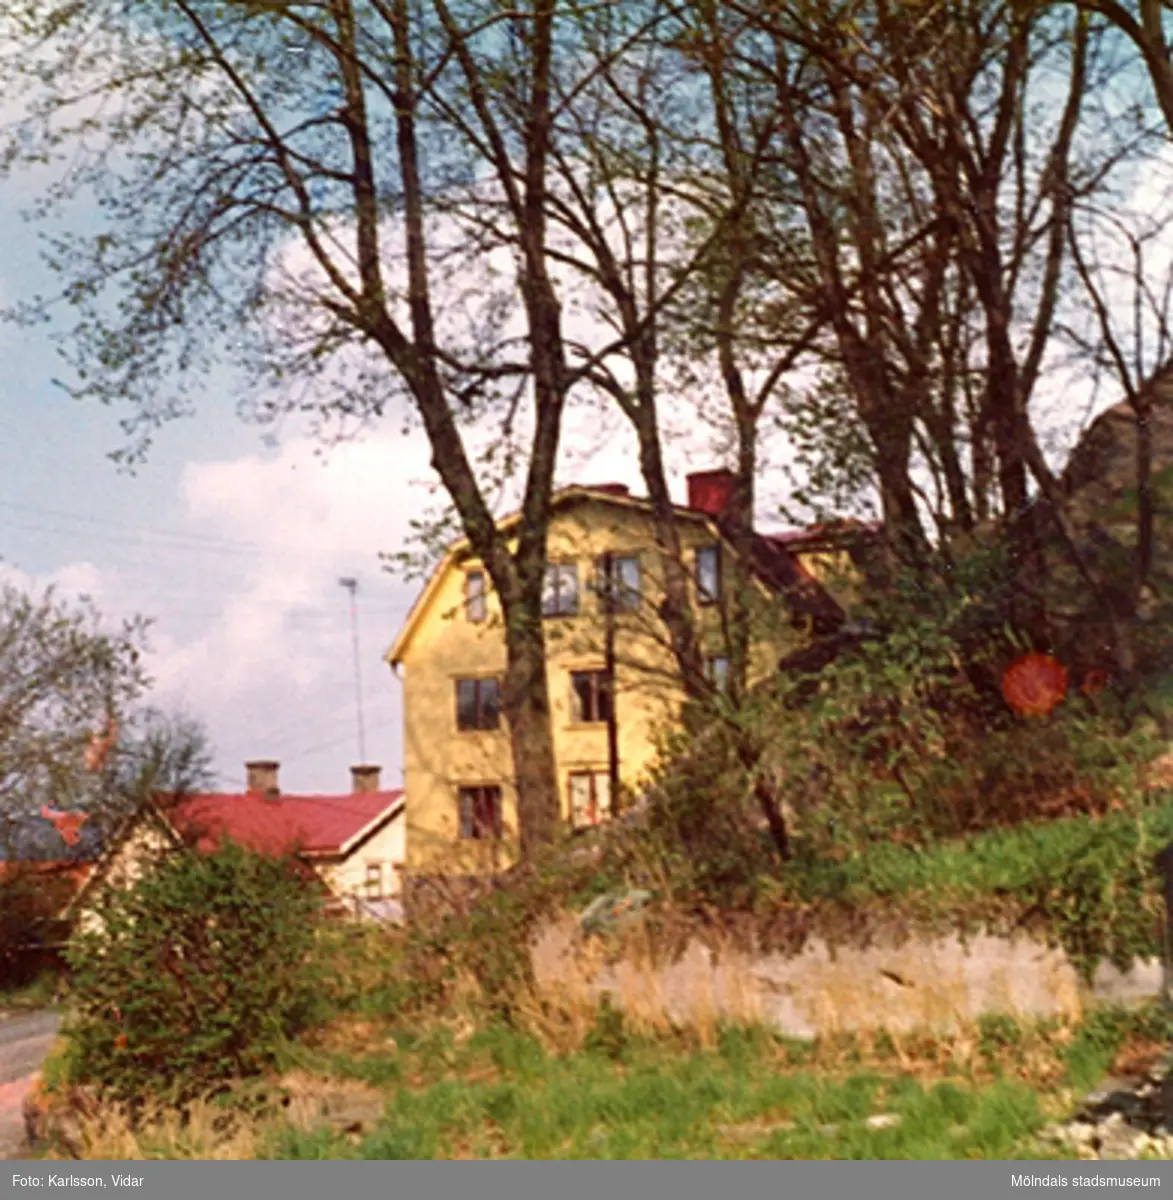 Roten G9, Norénska stiftelsens bostadshus (Johannehöjd), år 1974.